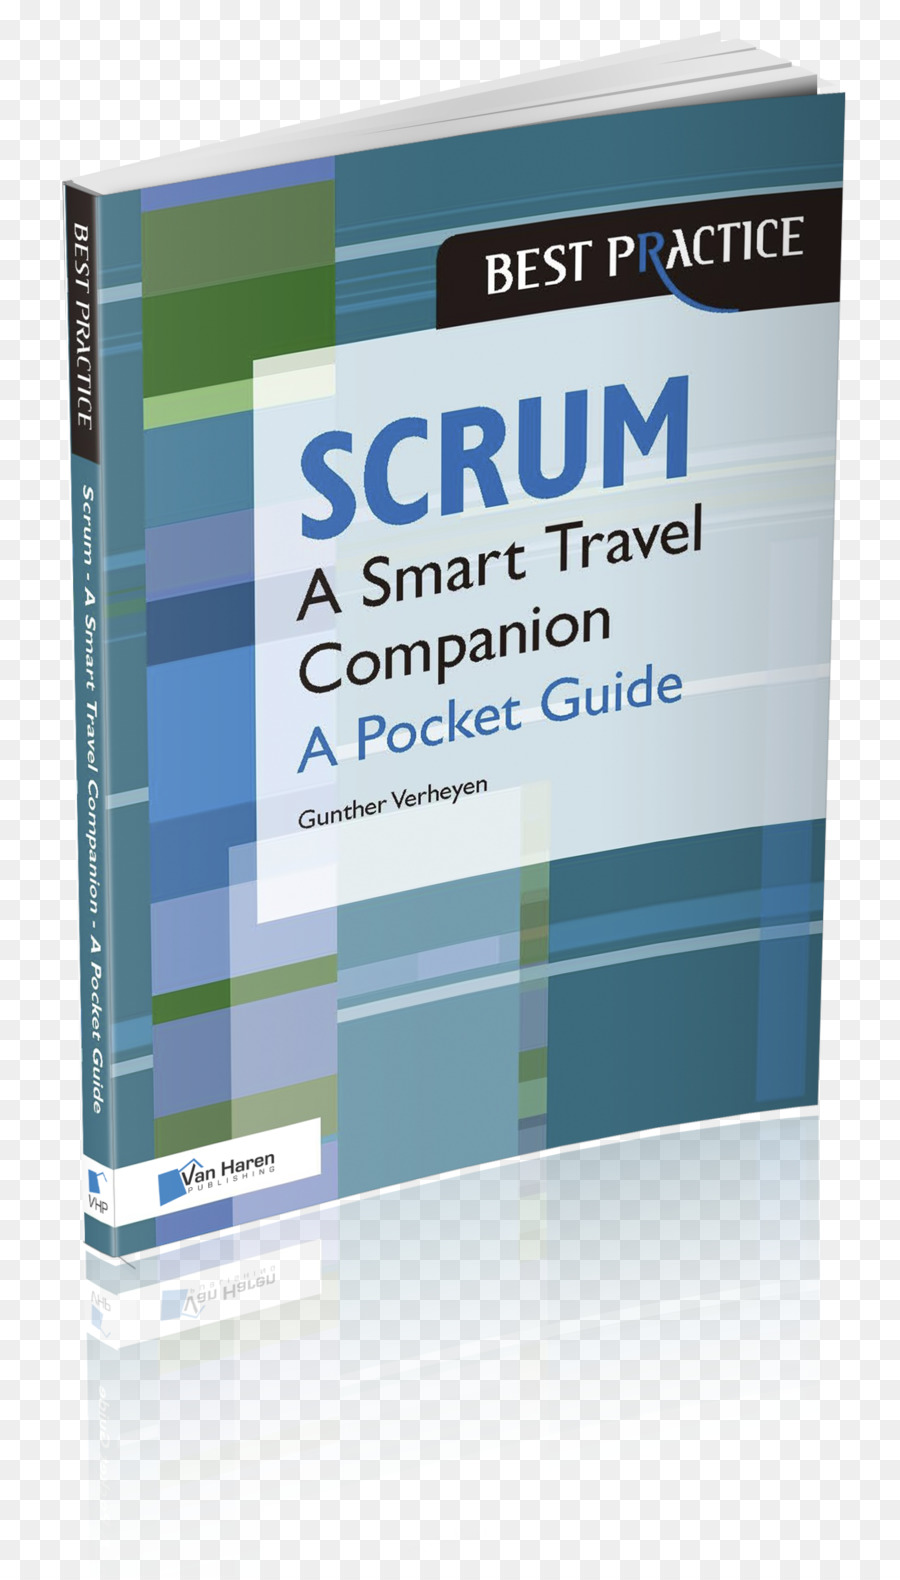 Scrum - Một Túi hướng Dẫn nhanh Nhẹn túi hướng dẫn cho đảo ngược organisaties Một Thực tế hướng Dẫn phân Phối Scrum Scrum trong bìa giấy: Một hướng dẫn cho ý thức Explorer - Cuốn sách